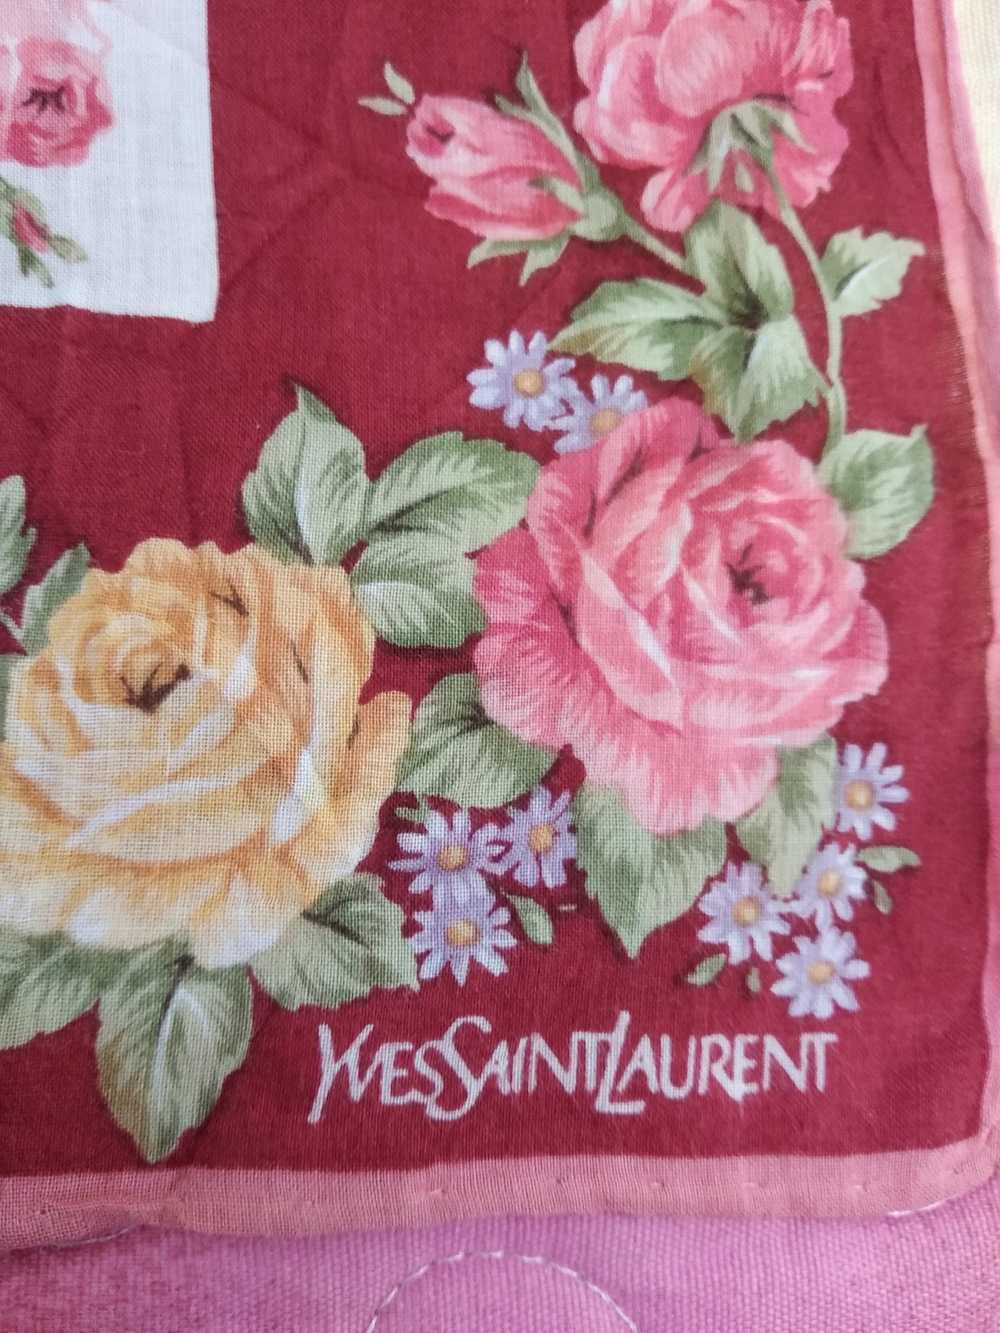 Yves Saint Laurent Yvessaintlaurent handkerchief … - image 5